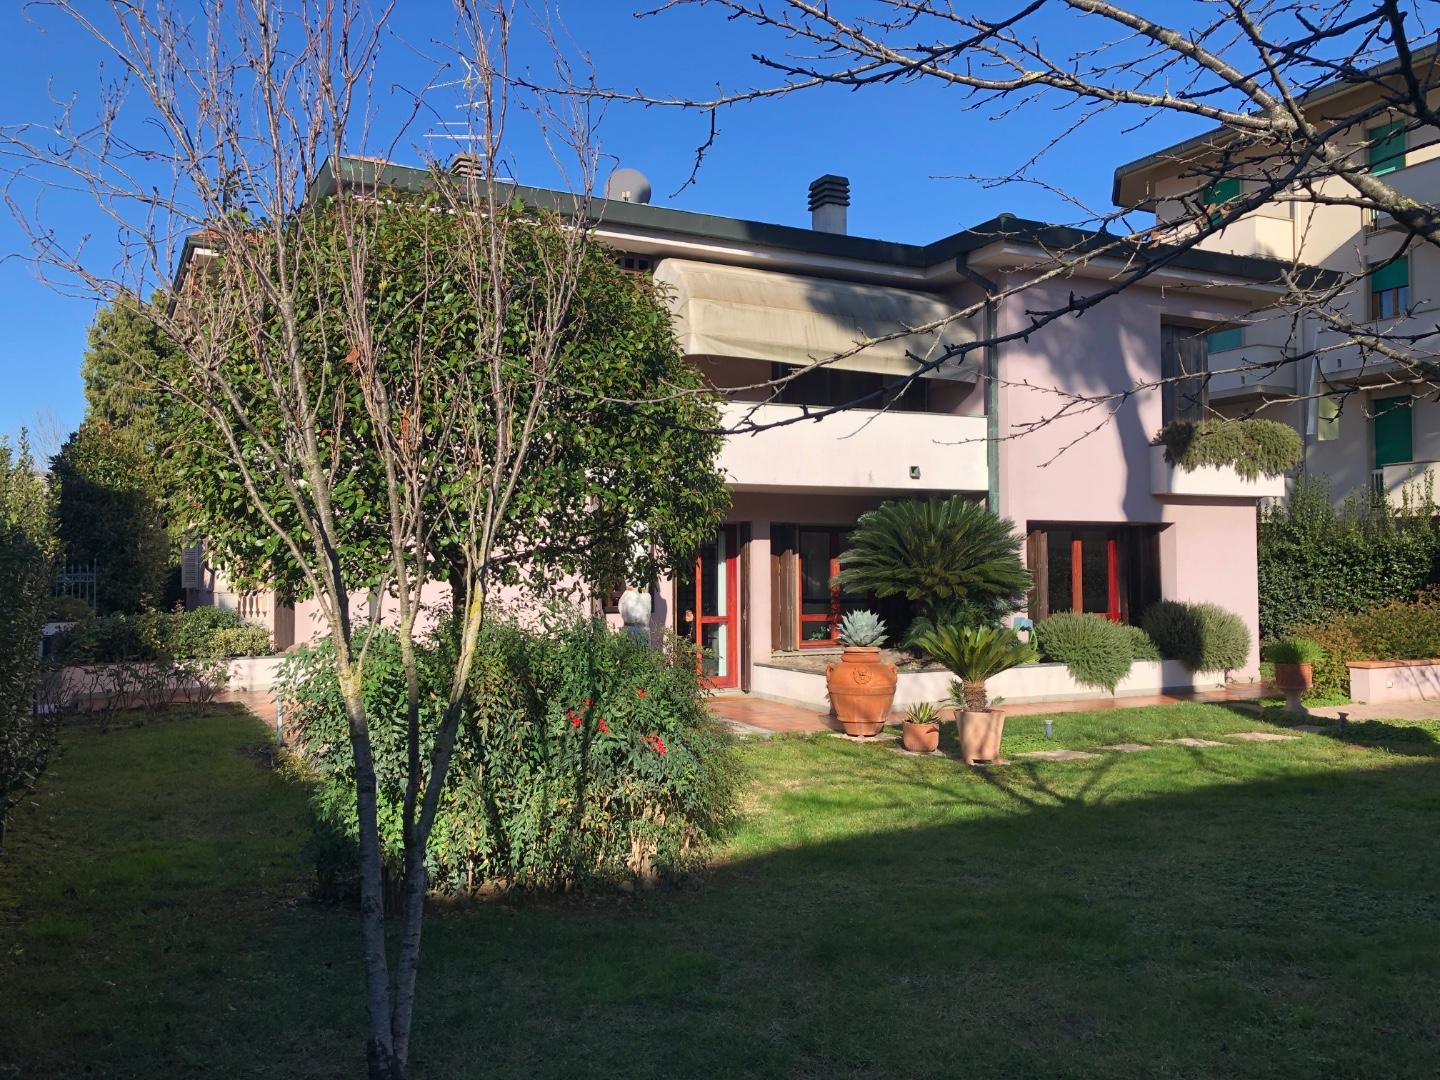 Villa in vendita a Santa Croce sull'Arno, 12 locali, prezzo € 550.000 | PortaleAgenzieImmobiliari.it